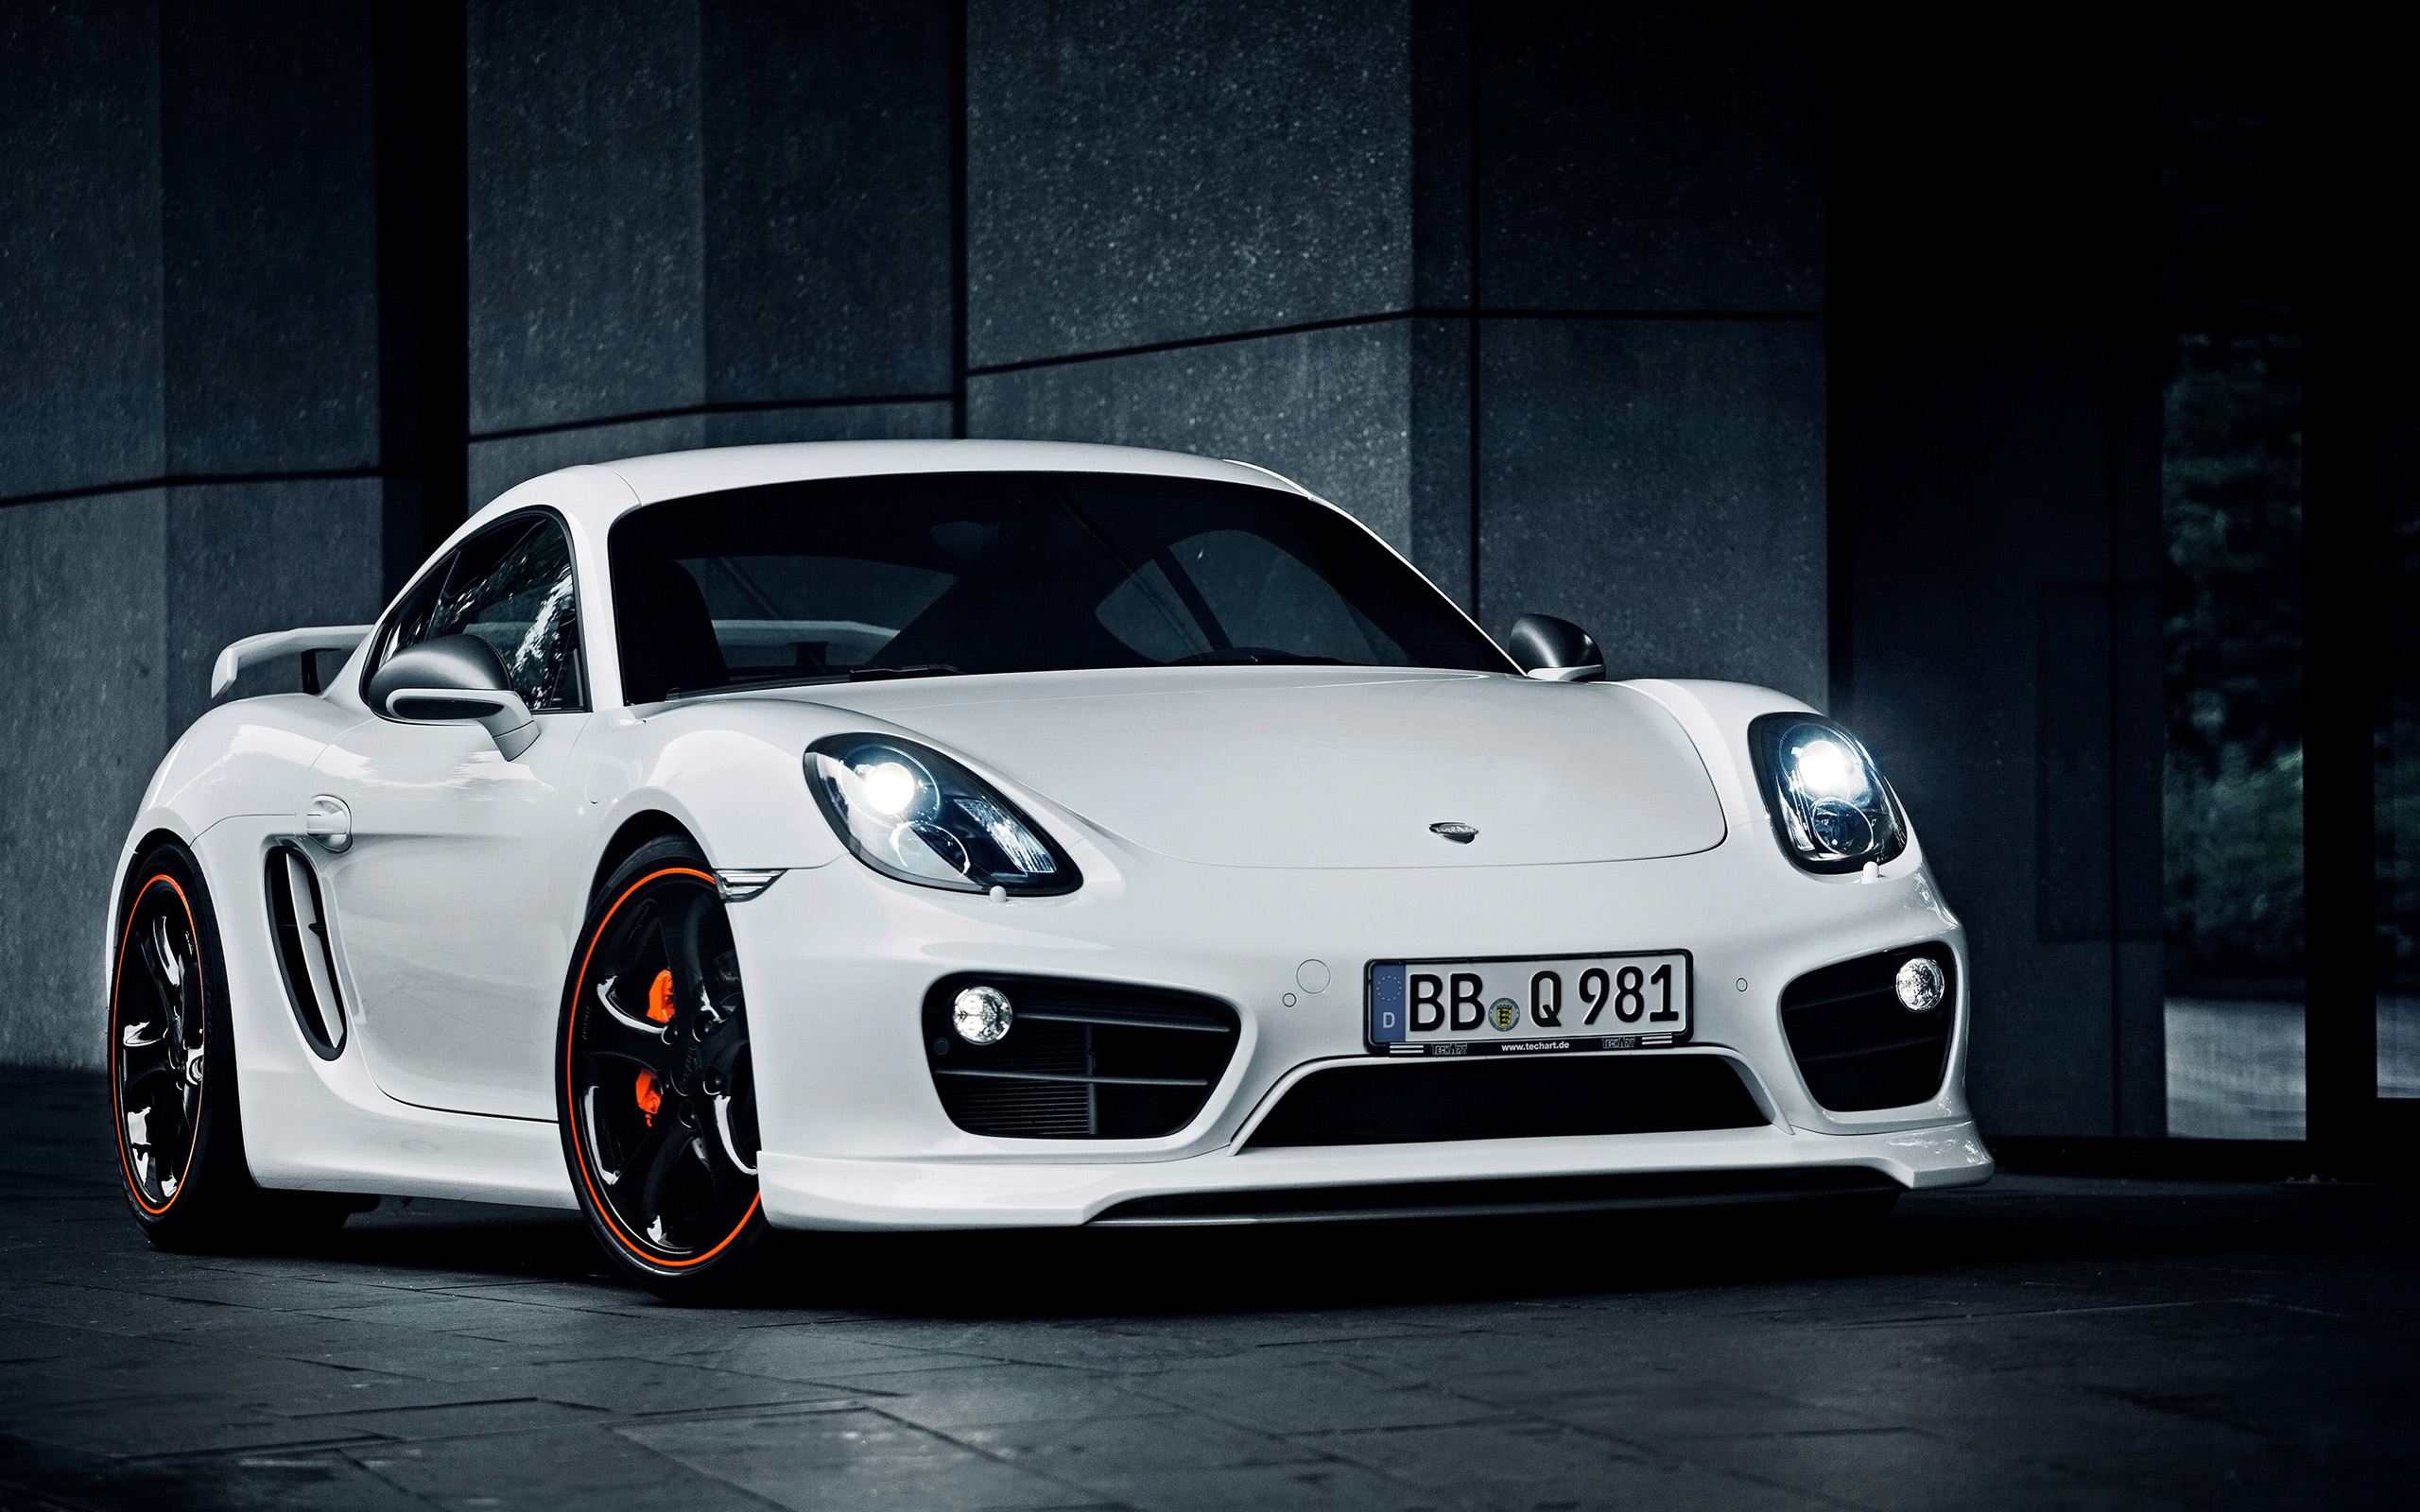 2014 TechArt Porsche Cayman Wallpapers HD Wallpapers 2560x1600